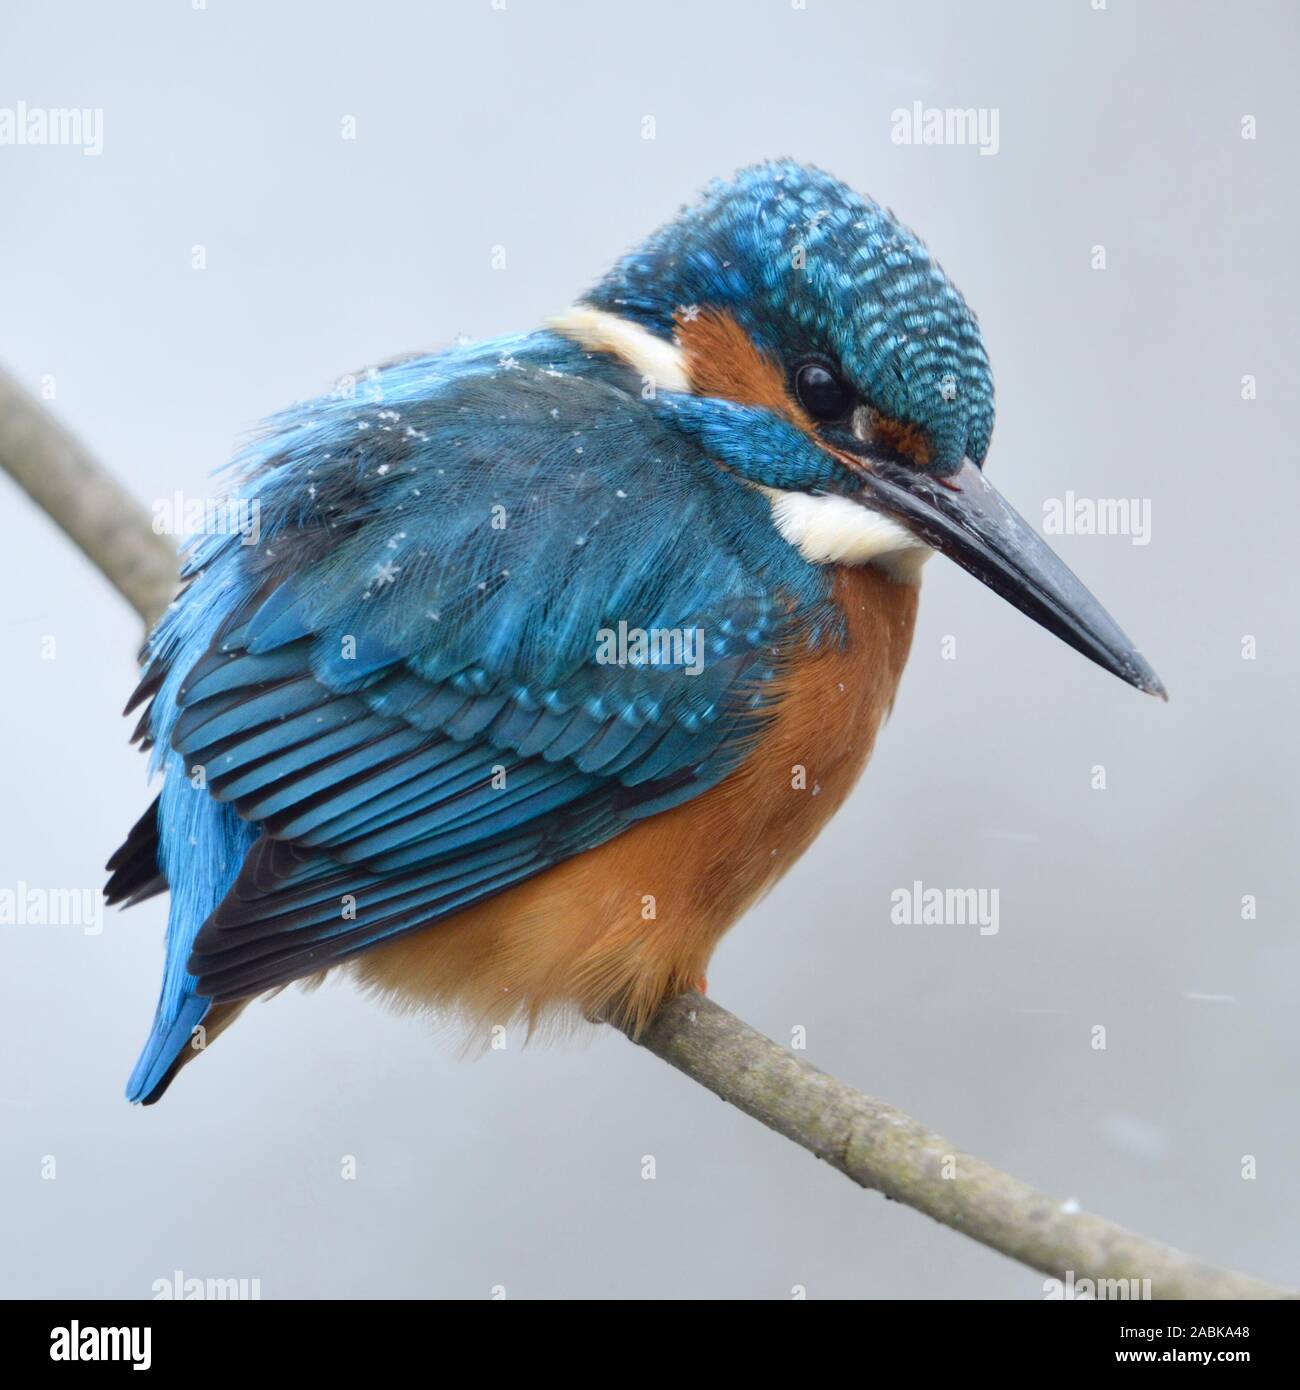 / Kingfisher Alcedo atthis Optimize ( ), homme en hiver, perché sur une branche avec des flocons de neige sur le dos, de la faune, de l'Europe. Banque D'Images